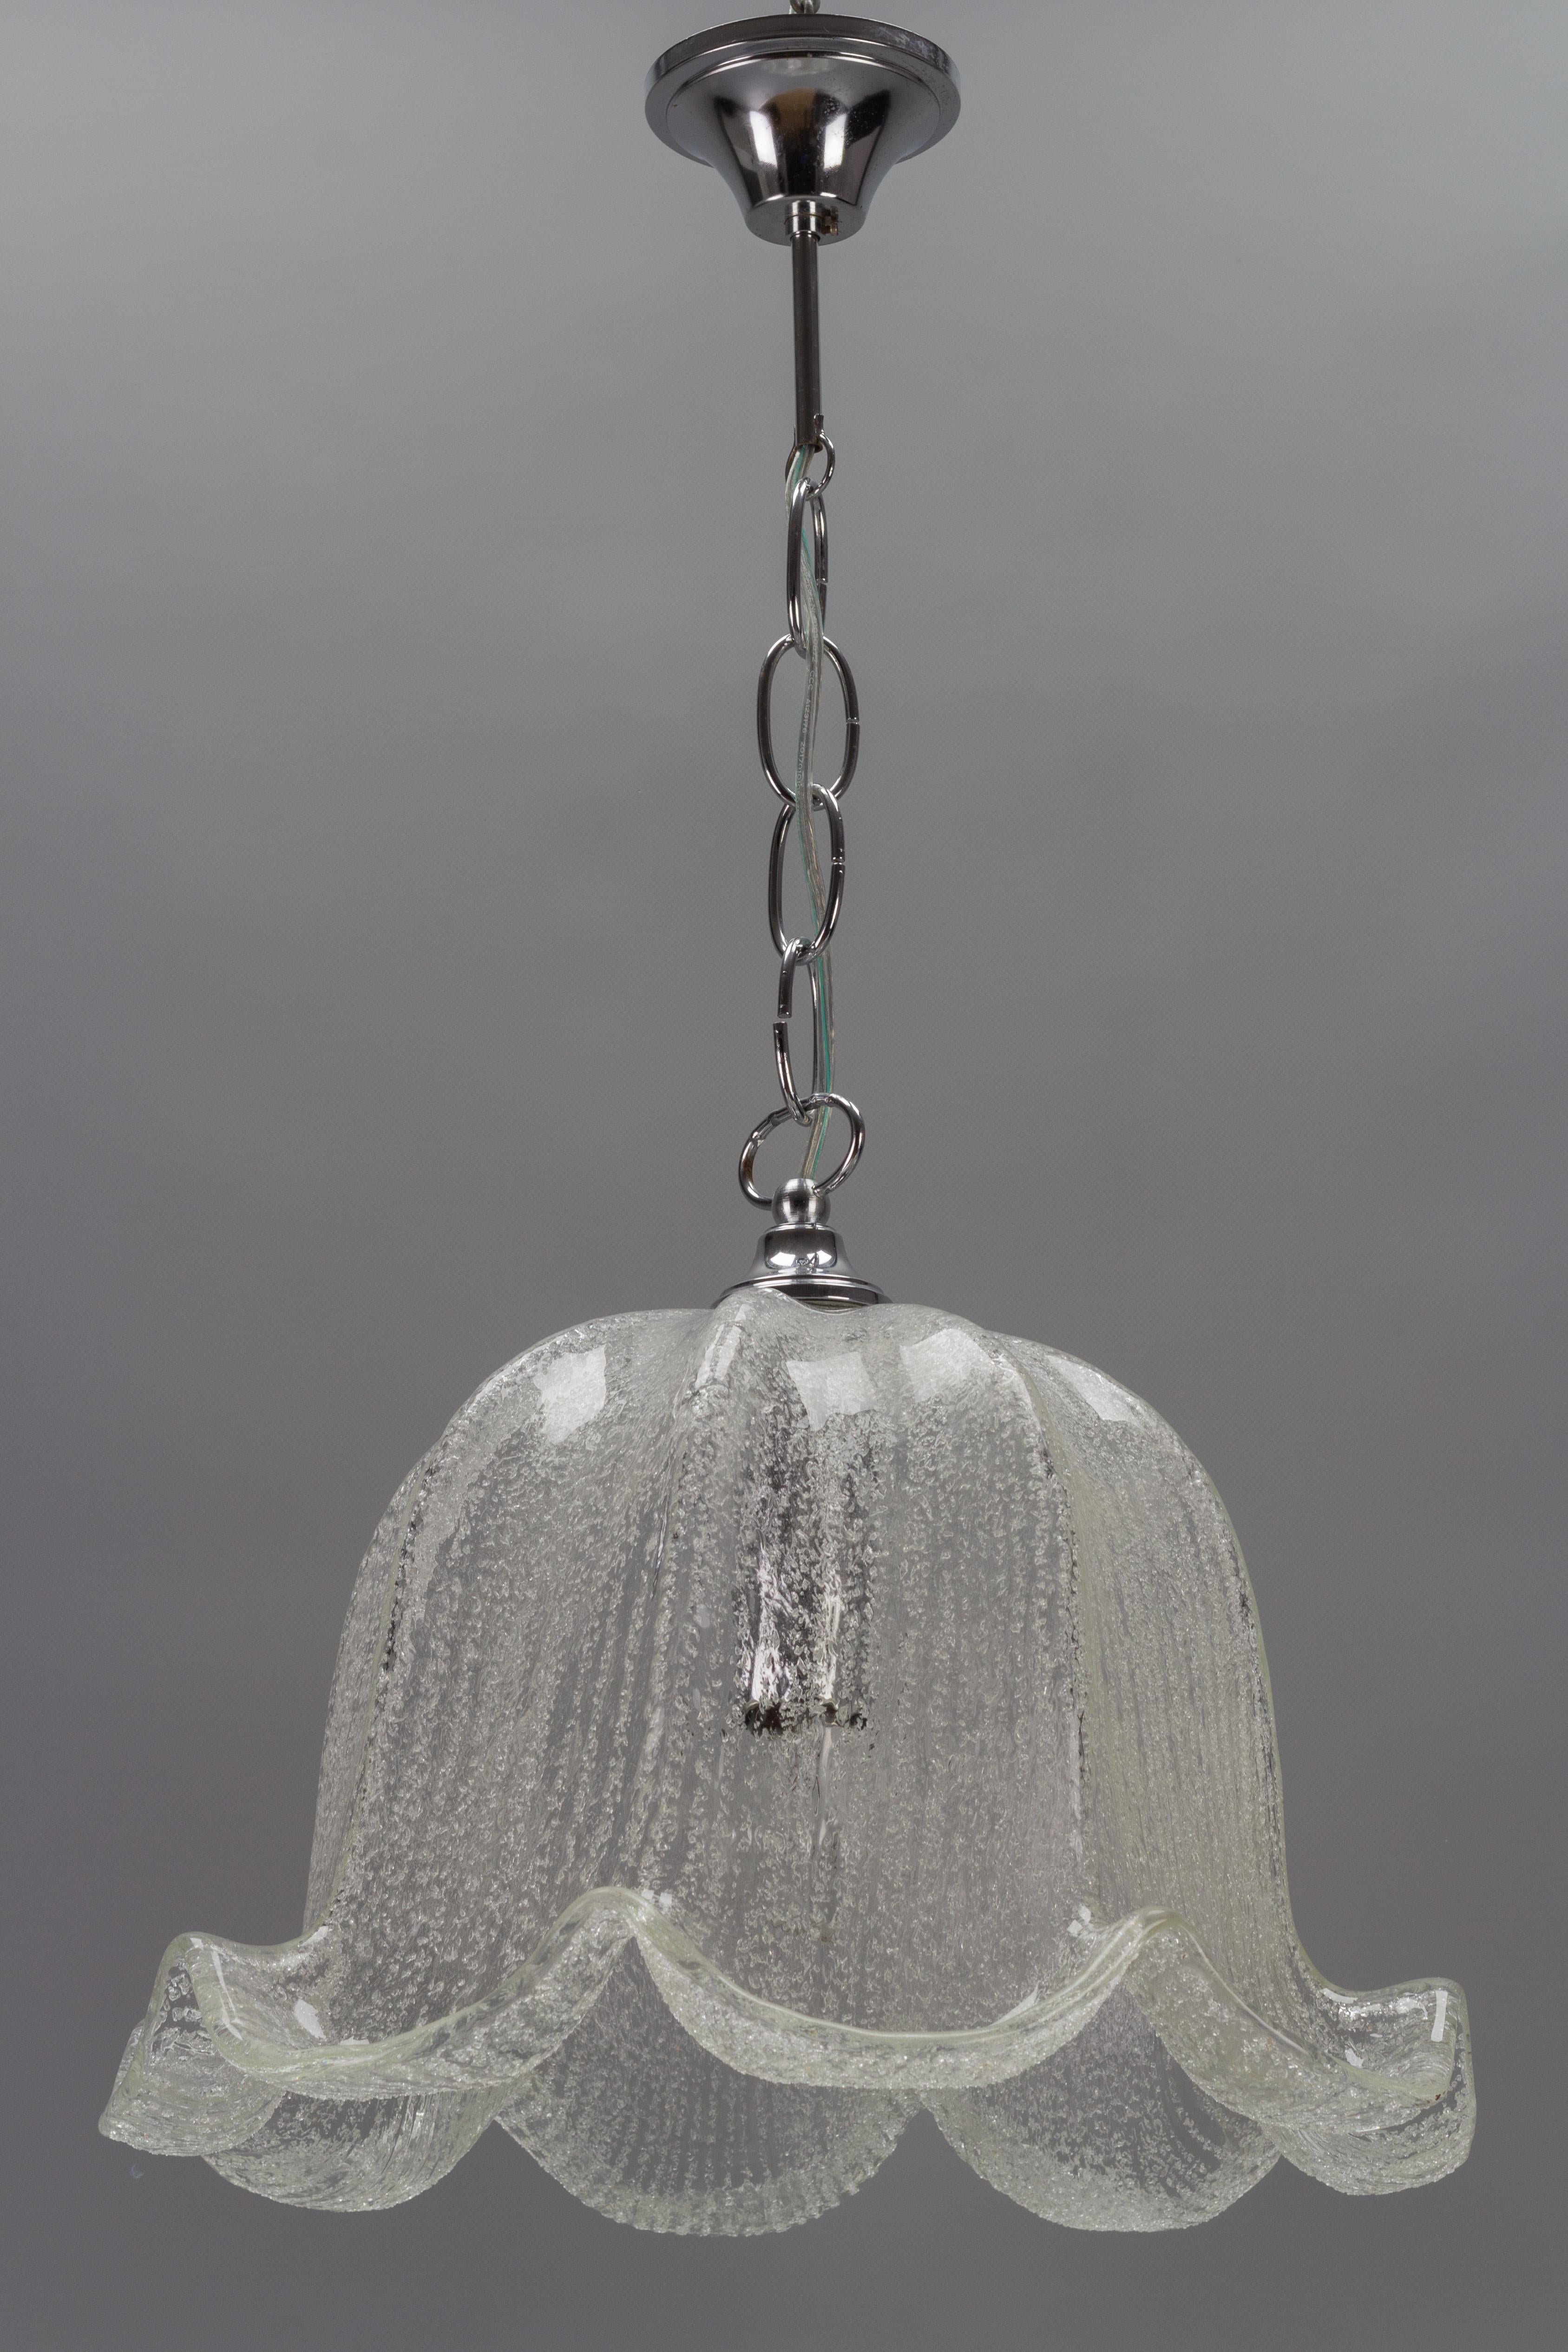 Eine elegante Mid-Century Modern Pendelleuchte mit schön geformtem Eisglasschirm und verchromter Metallfassung. Hergestellt in Deutschland, etwa in den 1970er Jahren.
Eine Fassung für E27 (E26) Glühbirnen.
Abmessungen: Höhe: 67 cm / 26.37 in;